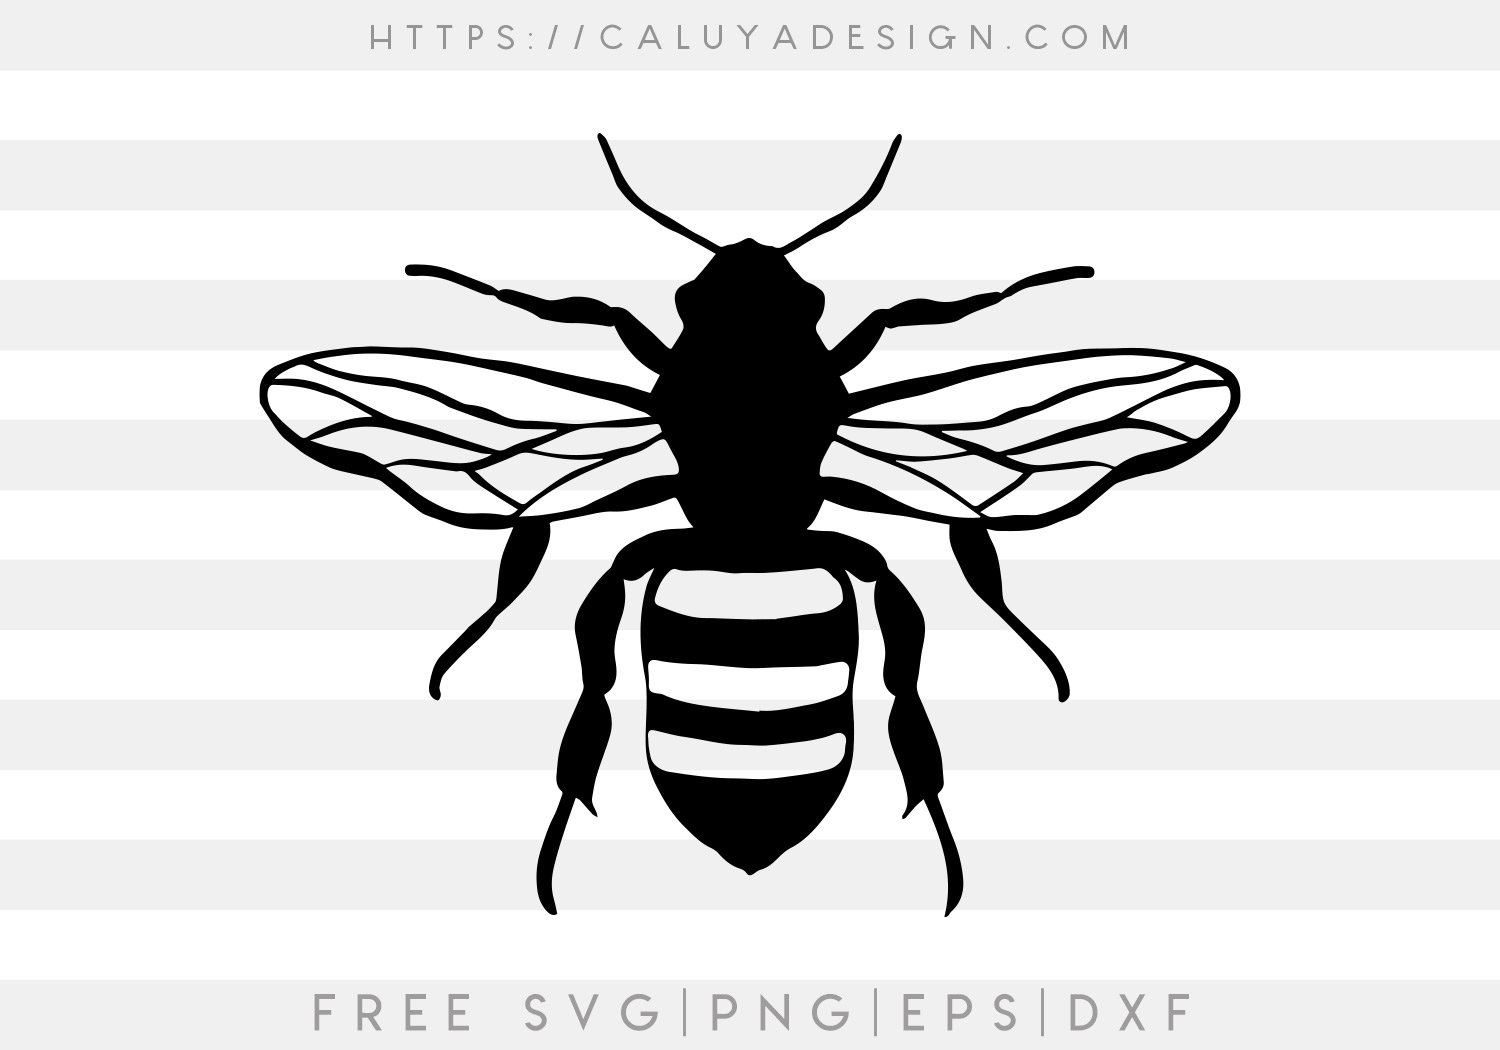 Free Vintage Bee SVG Cut File